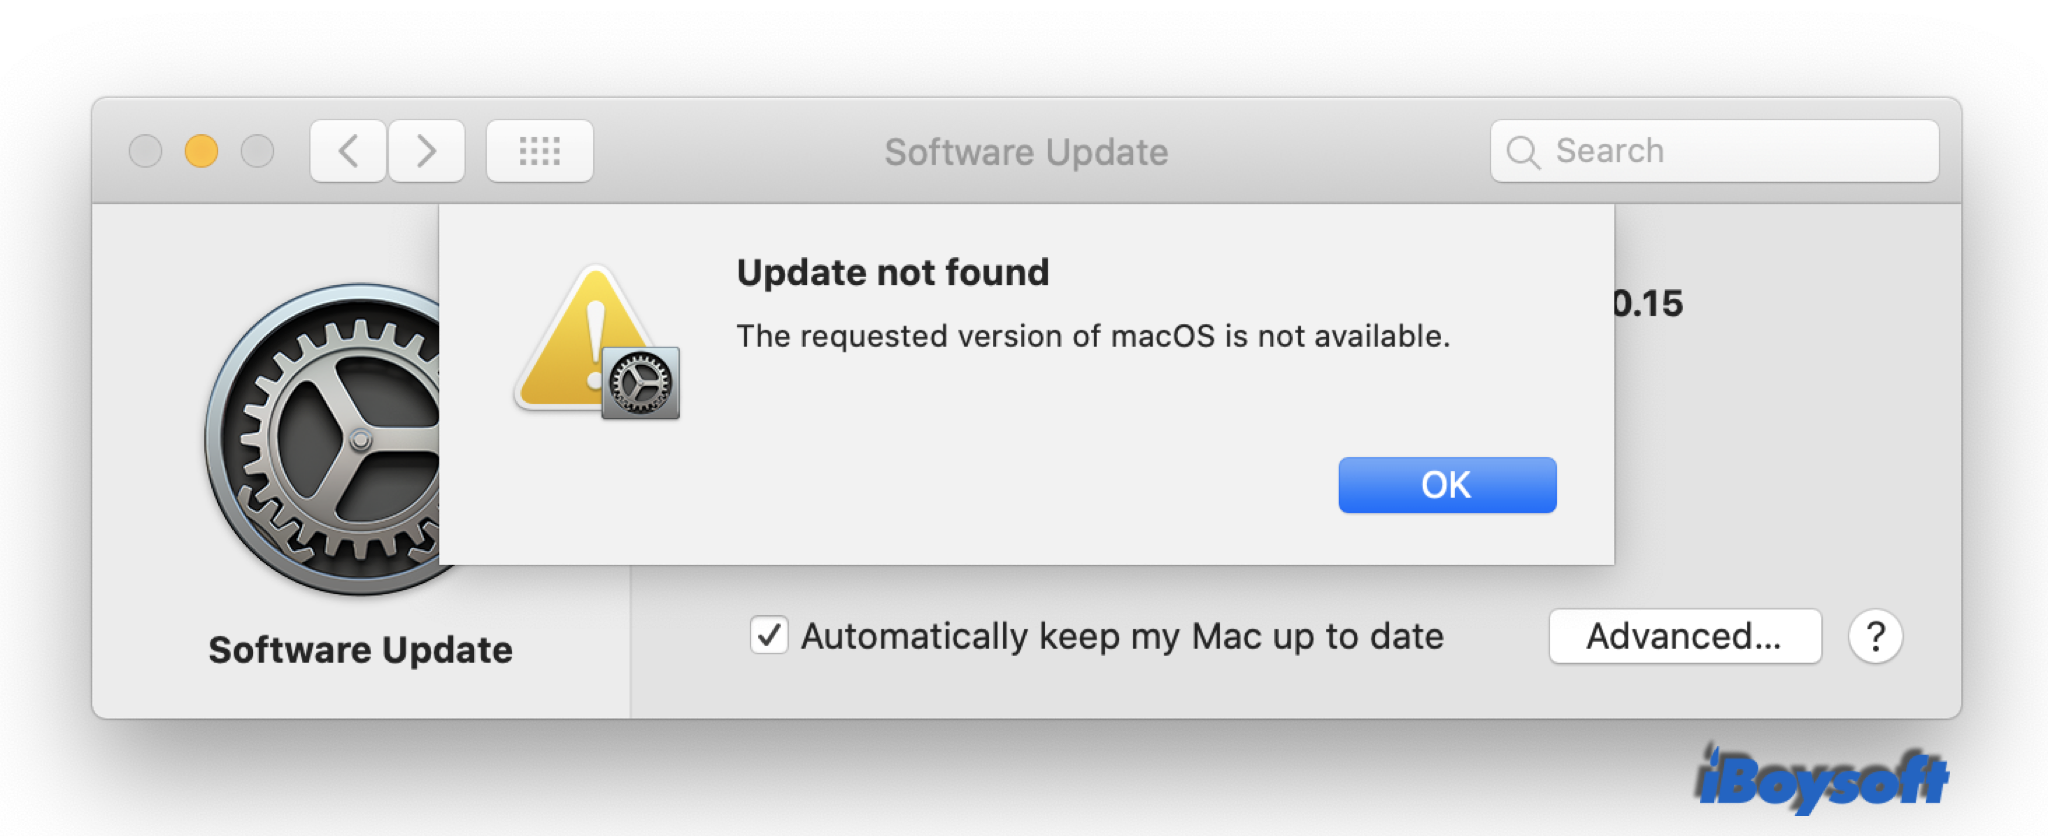 La versión solicitada de macOS no está disponible